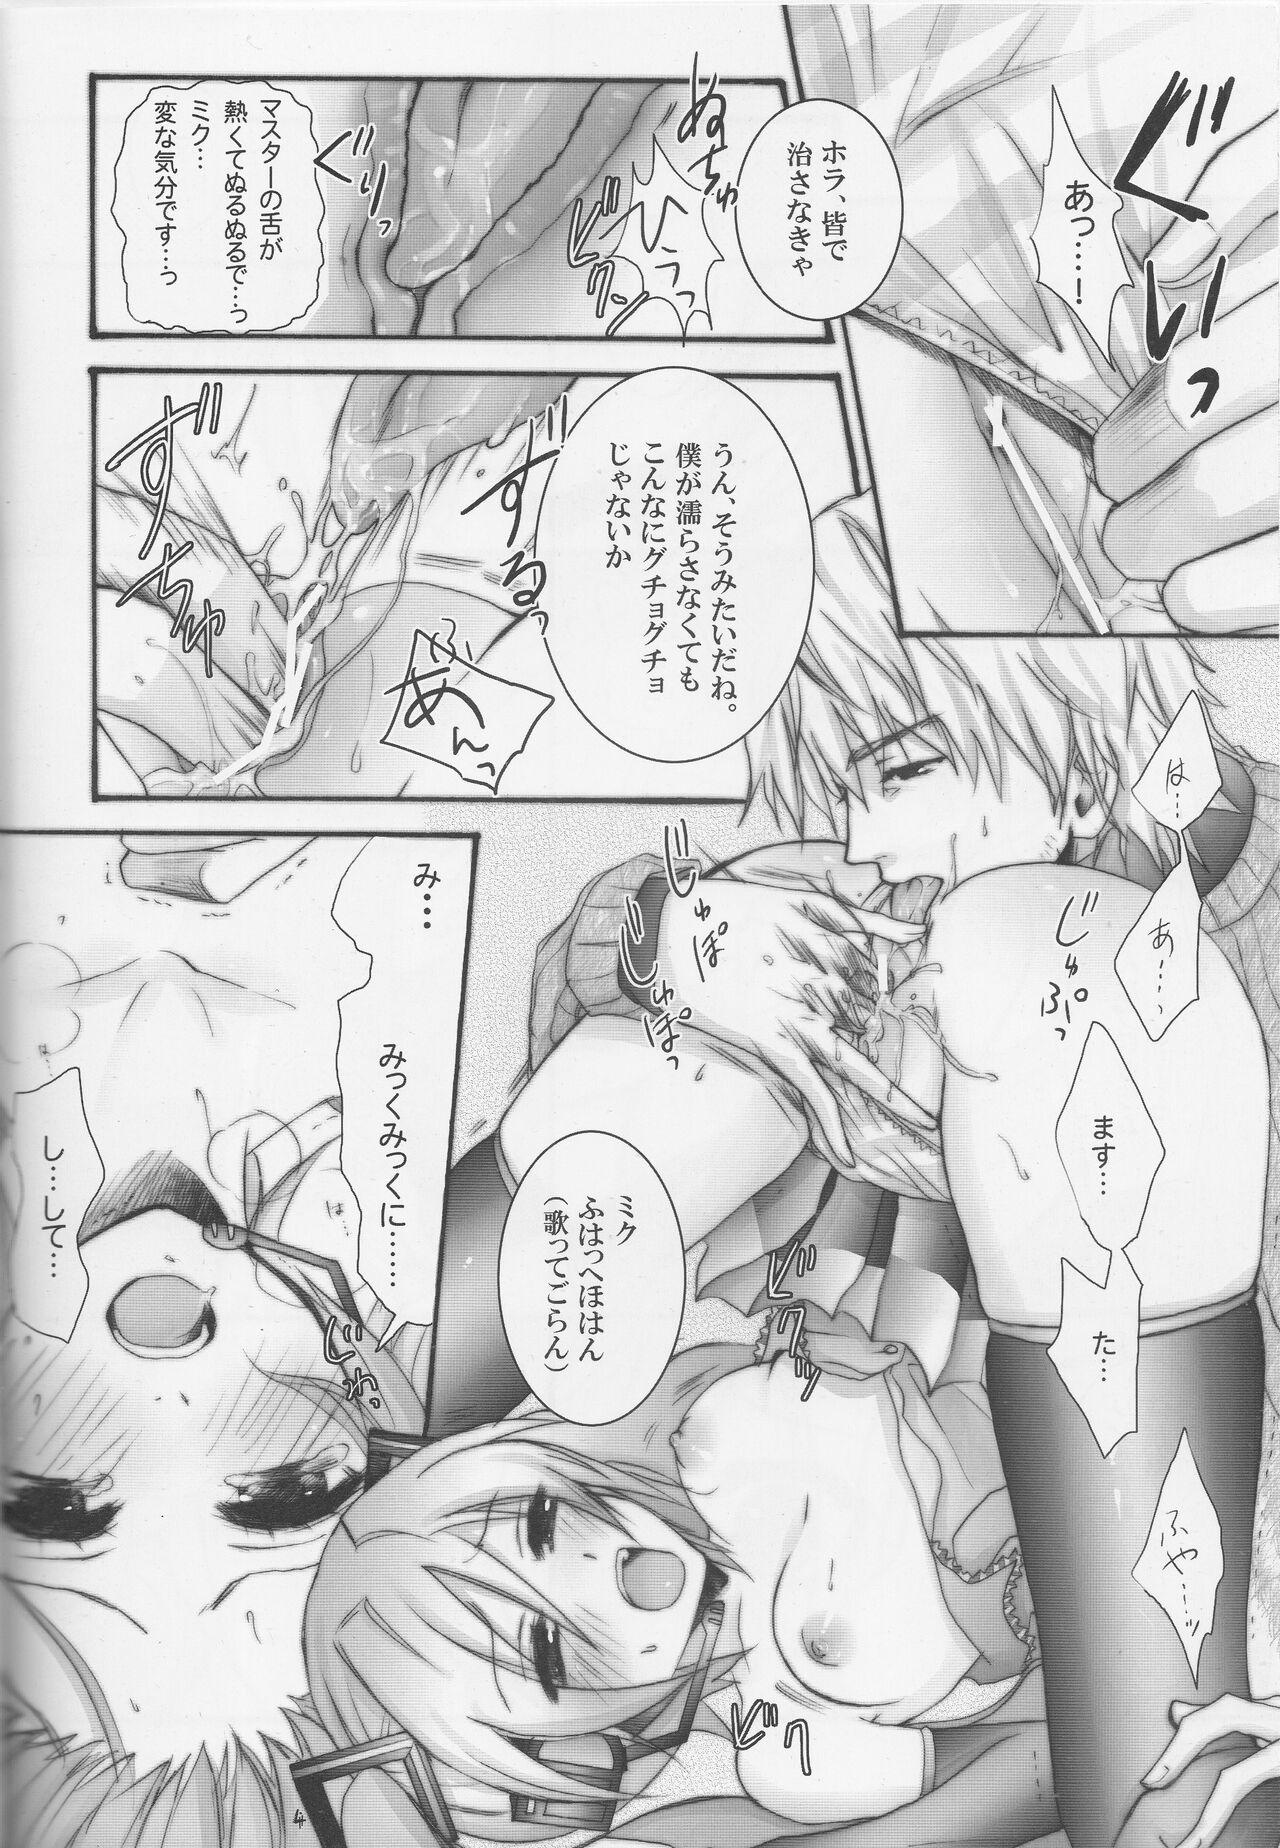 Jerkoff Masutā taihen! Bōkaroido ni jūdaina erā ga hassei shimashita! - Vocaloid Gaysex - Page 3